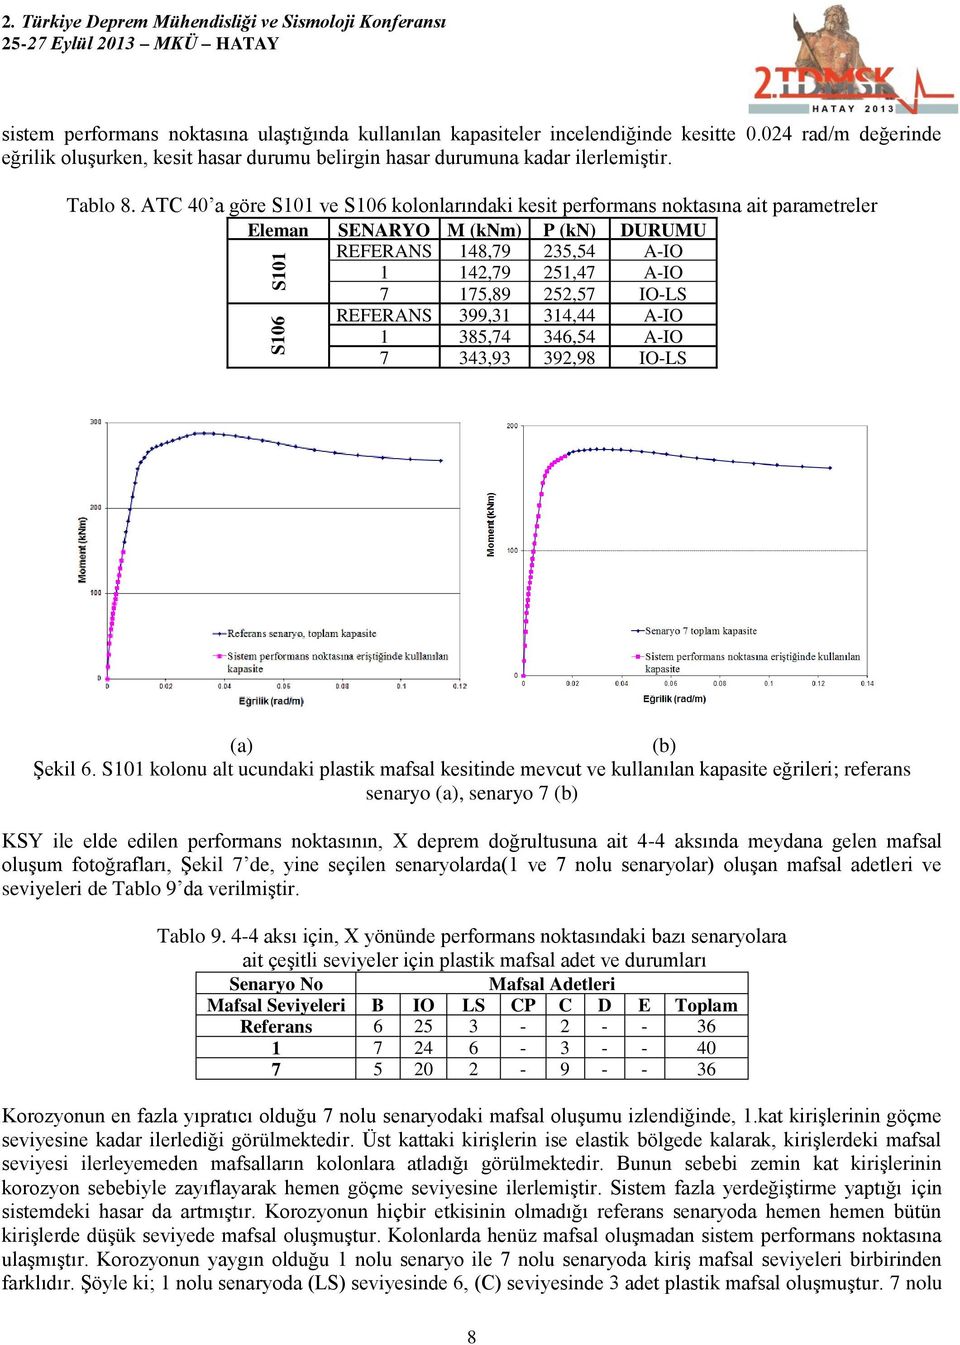 ATC 40 a göre S101 ve S106 kolonlarındaki kesit performans noktasına ait parametreler Eleman SENARYO M (knm) P (kn) DURUMU No REFERANS 148,79 235,54 A-IO 1 142,79 251,47 A-IO 7 175,89 252,57 IO-LS